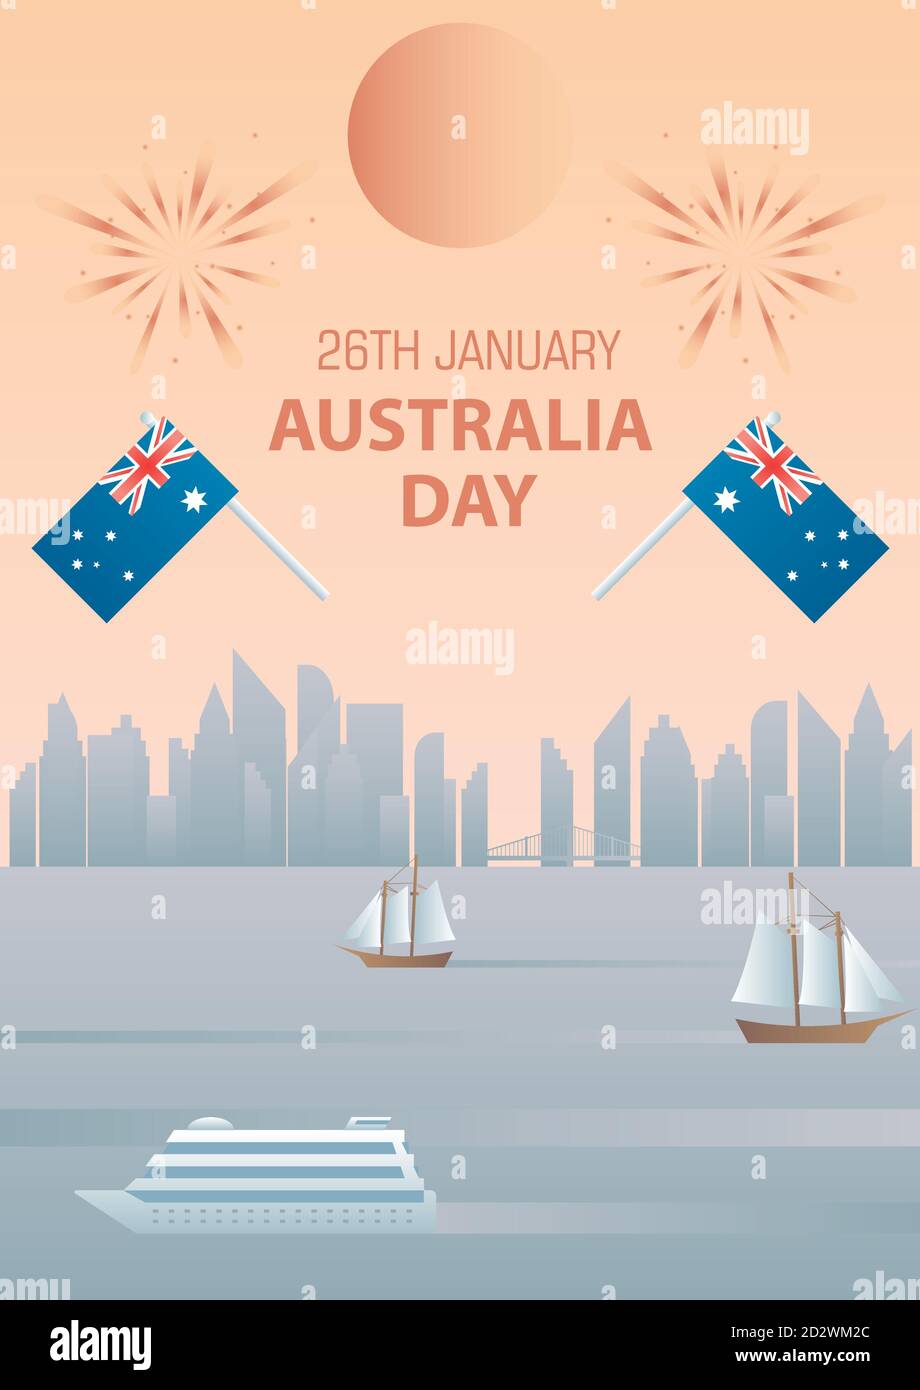 Australia Day 26. januar Vintage Poster vor der Kulisse der Stadt mit Fahnen und Feuerwerk. Stock Vektor